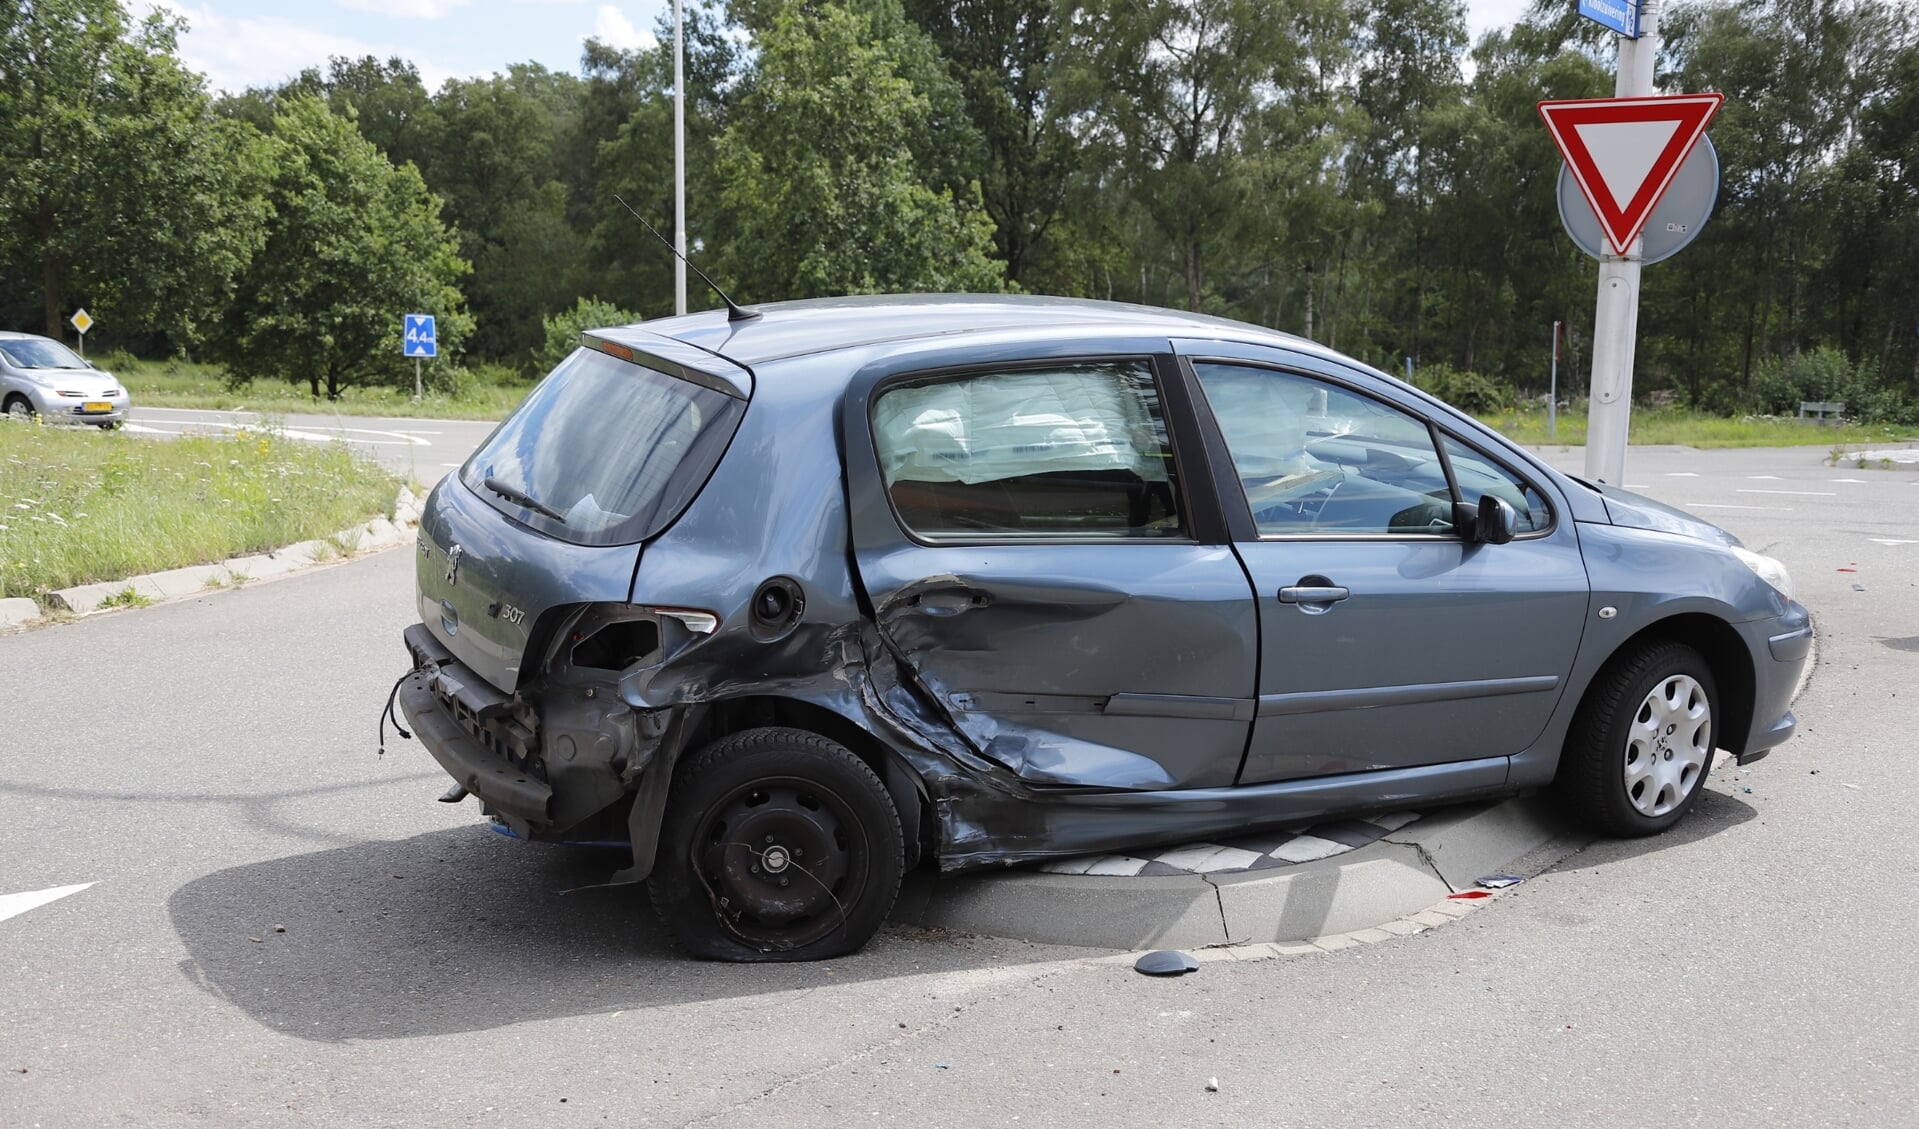 Zowel deze Peugeot als de auto van de andere bestuurder zijn door het ongeval flink beschadigd geraakt.